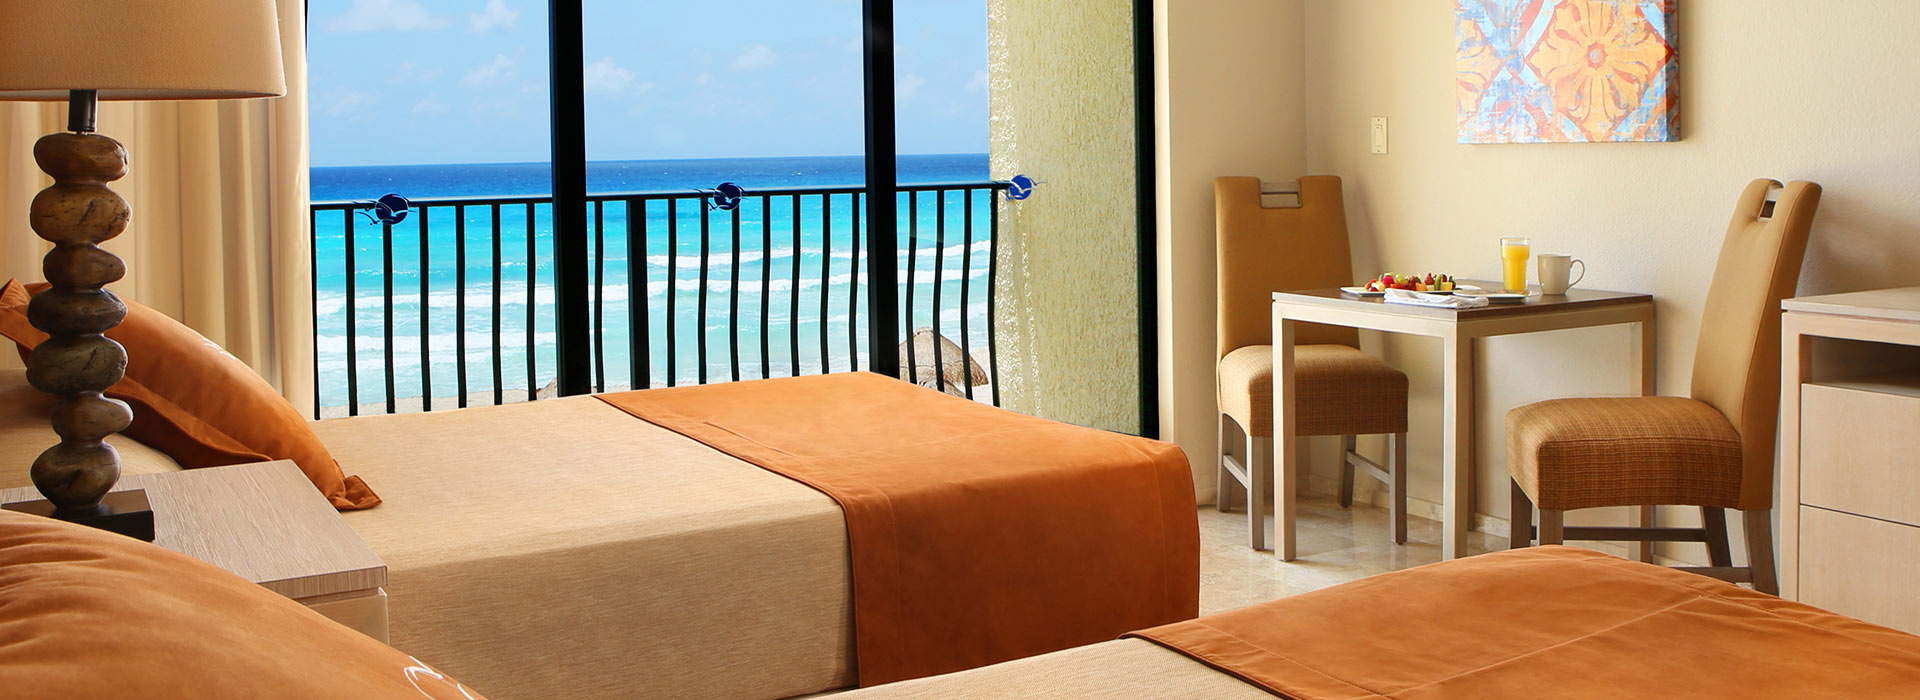 Junior Suite con vista al mar y amplia sala de estar frente a las hermosas playas del Mar Caribe